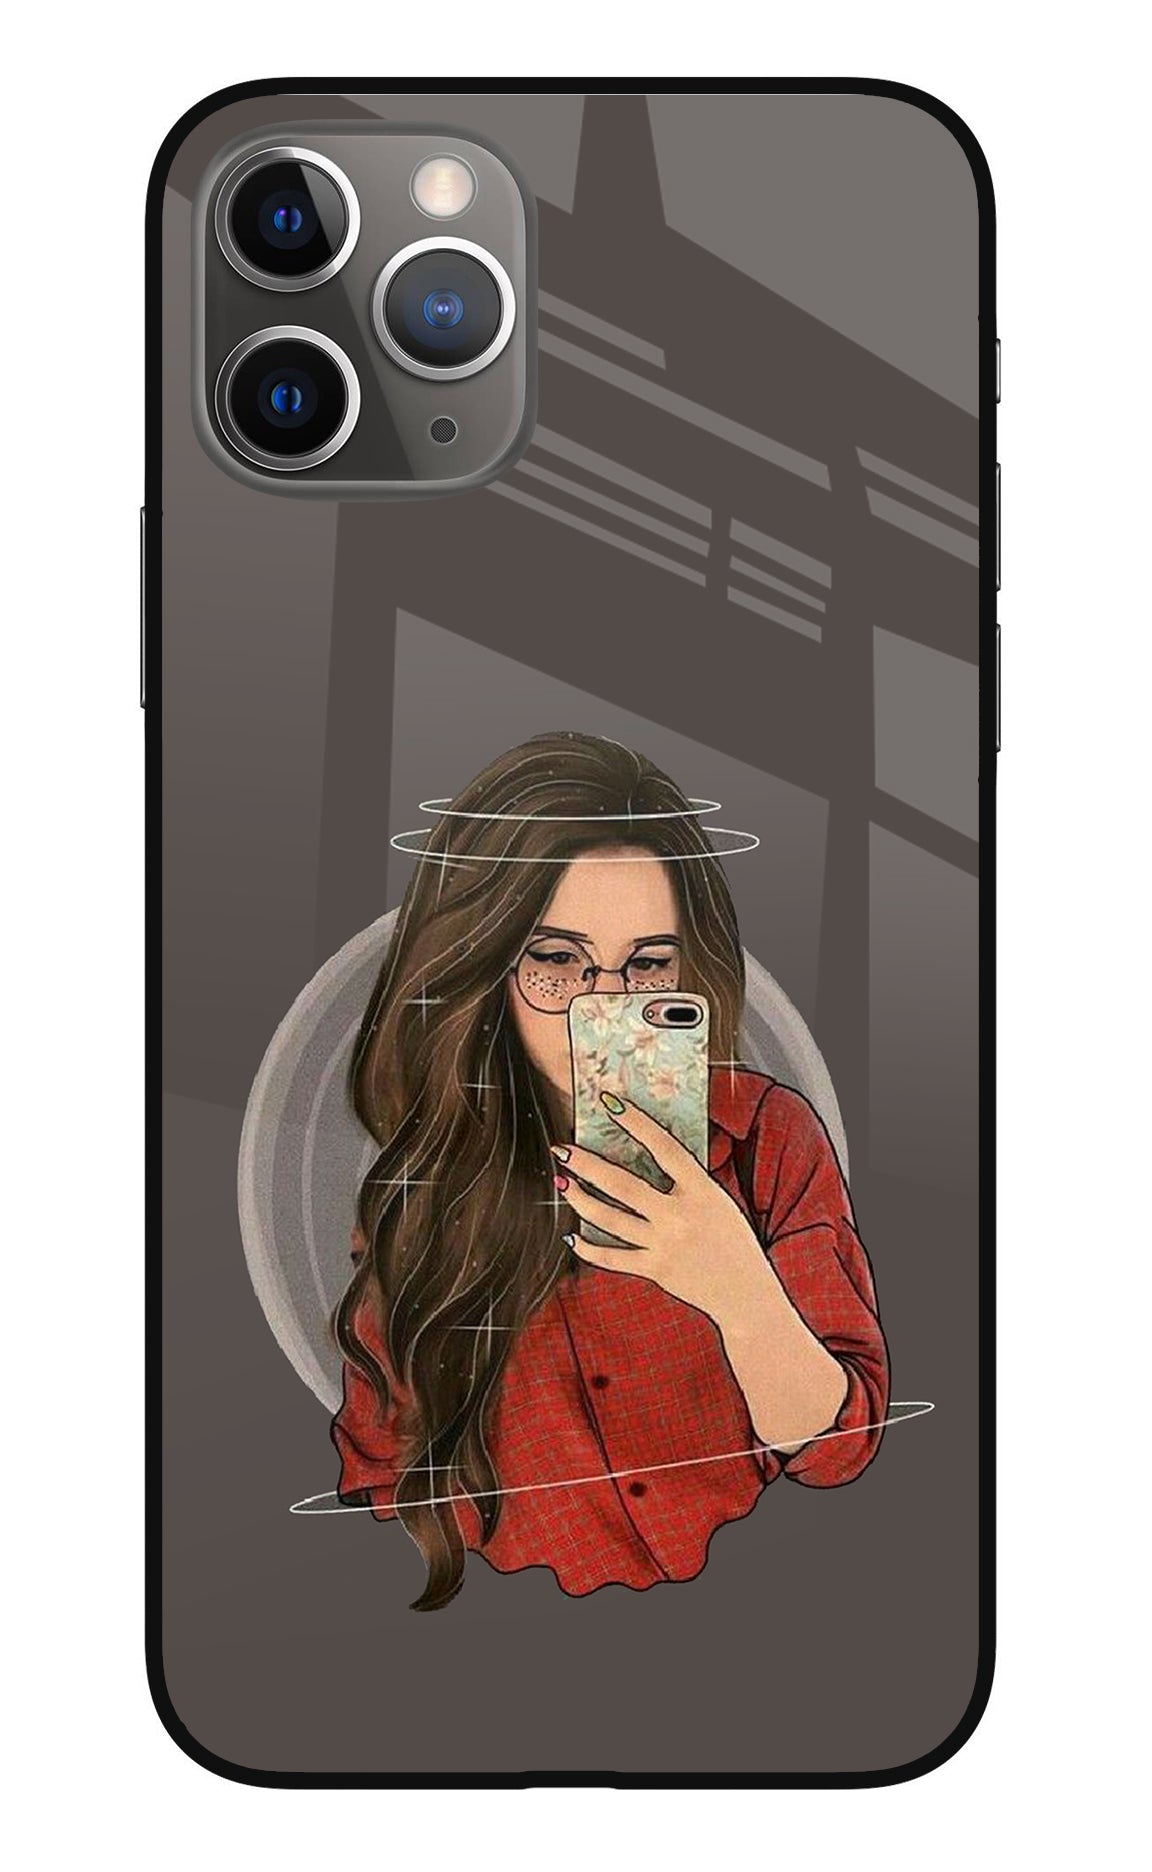 Selfie Queen iPhone 11 Pro Back Cover